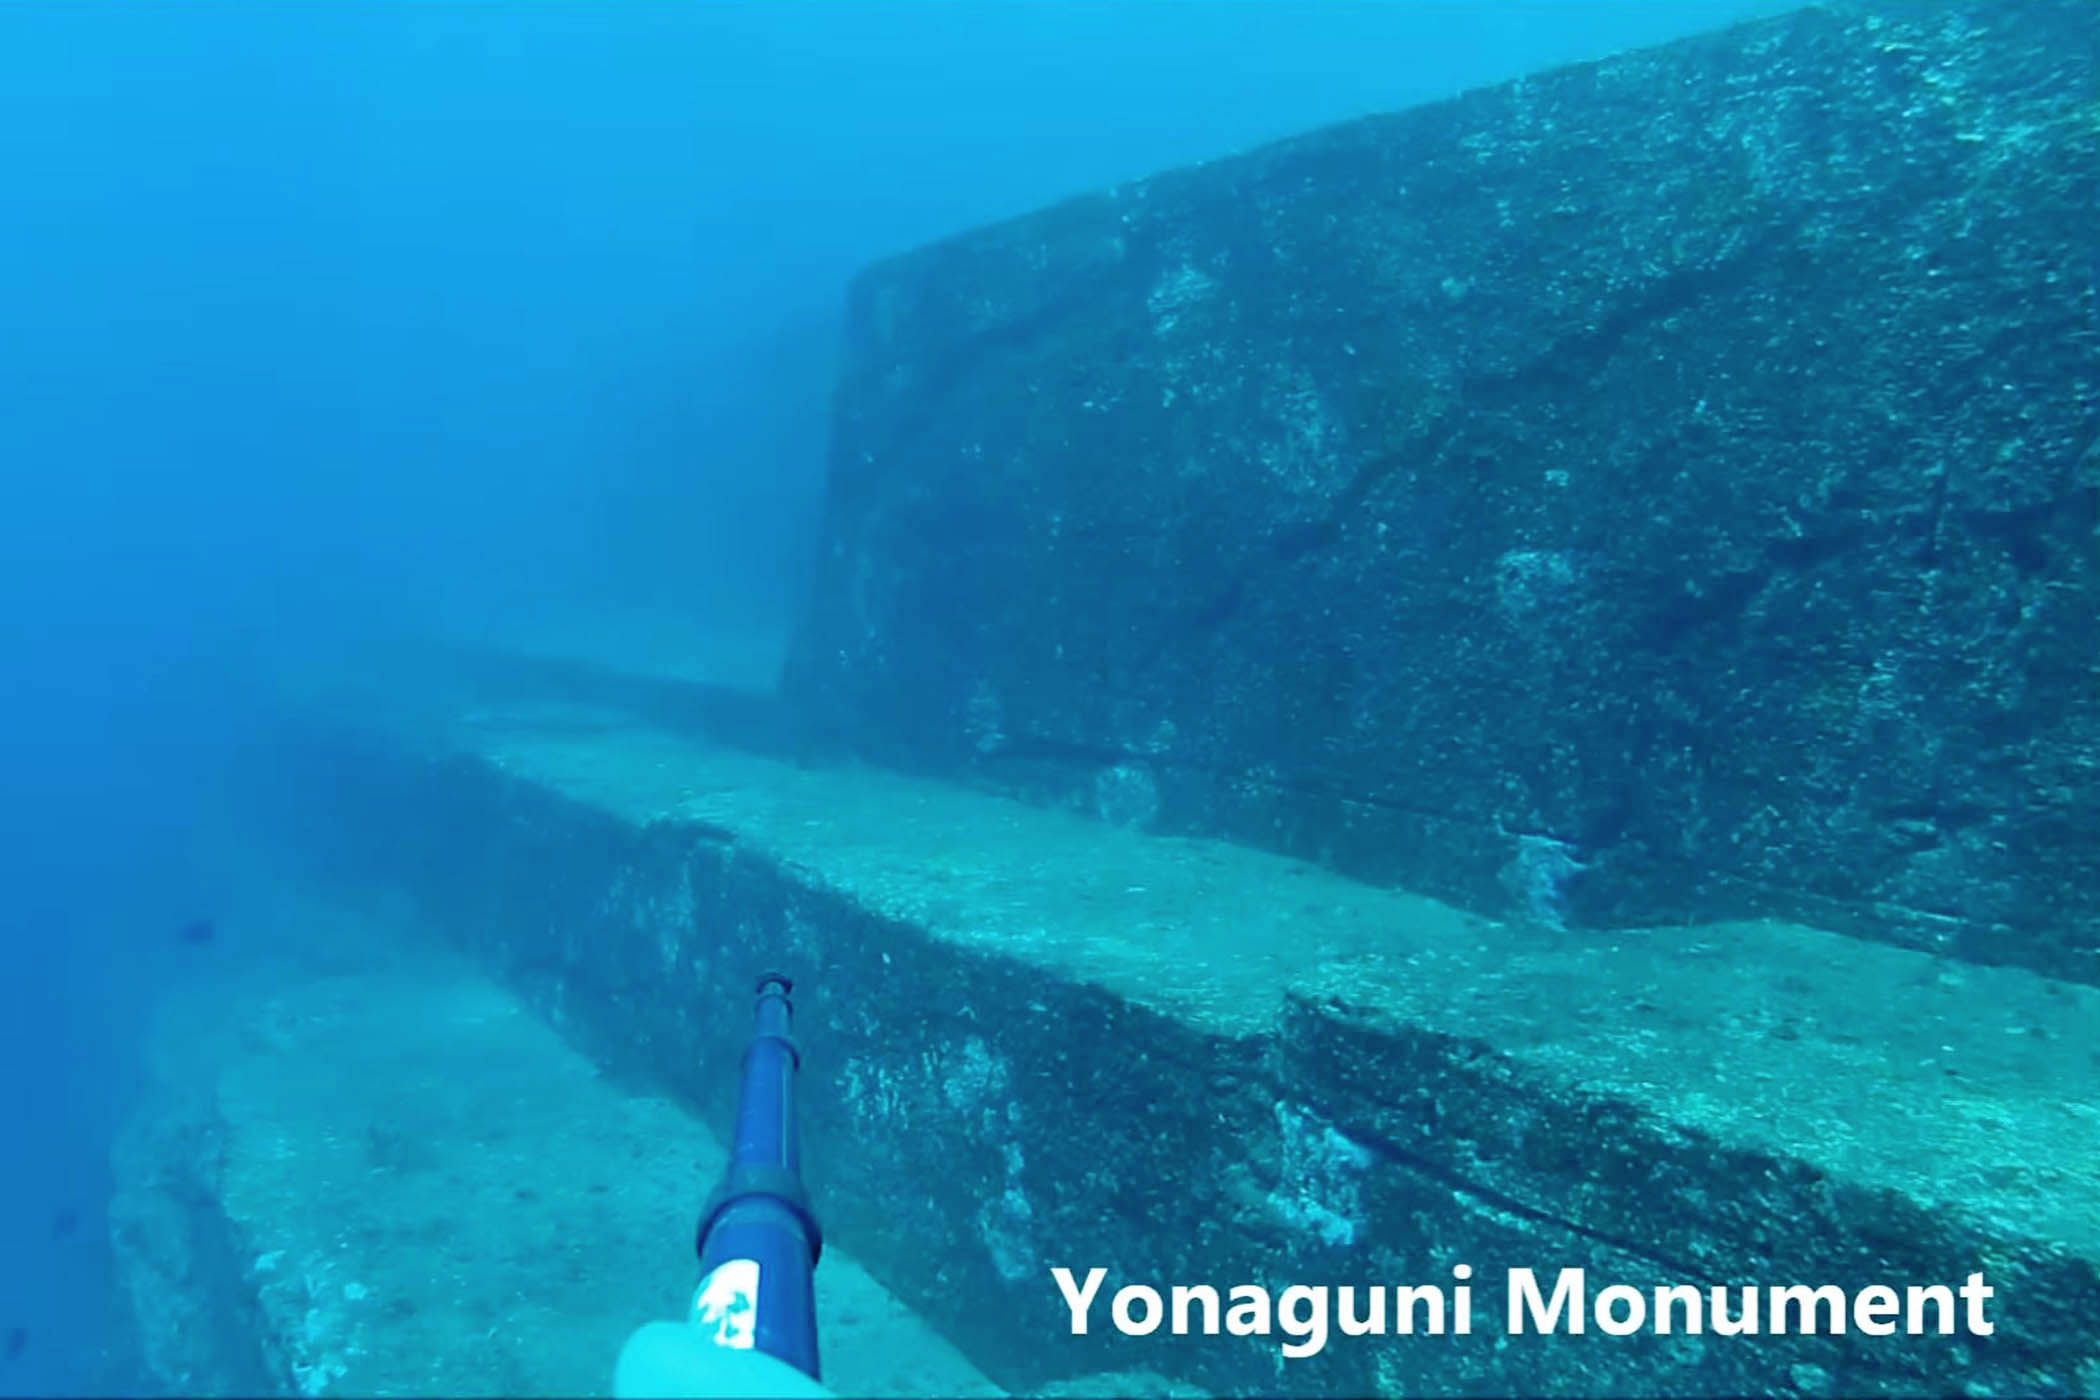 Đây được cho là các bức tường tại Di tích Yonaguni. (Ảnh: Đăng dưới sự cho phép của Freediver HD)